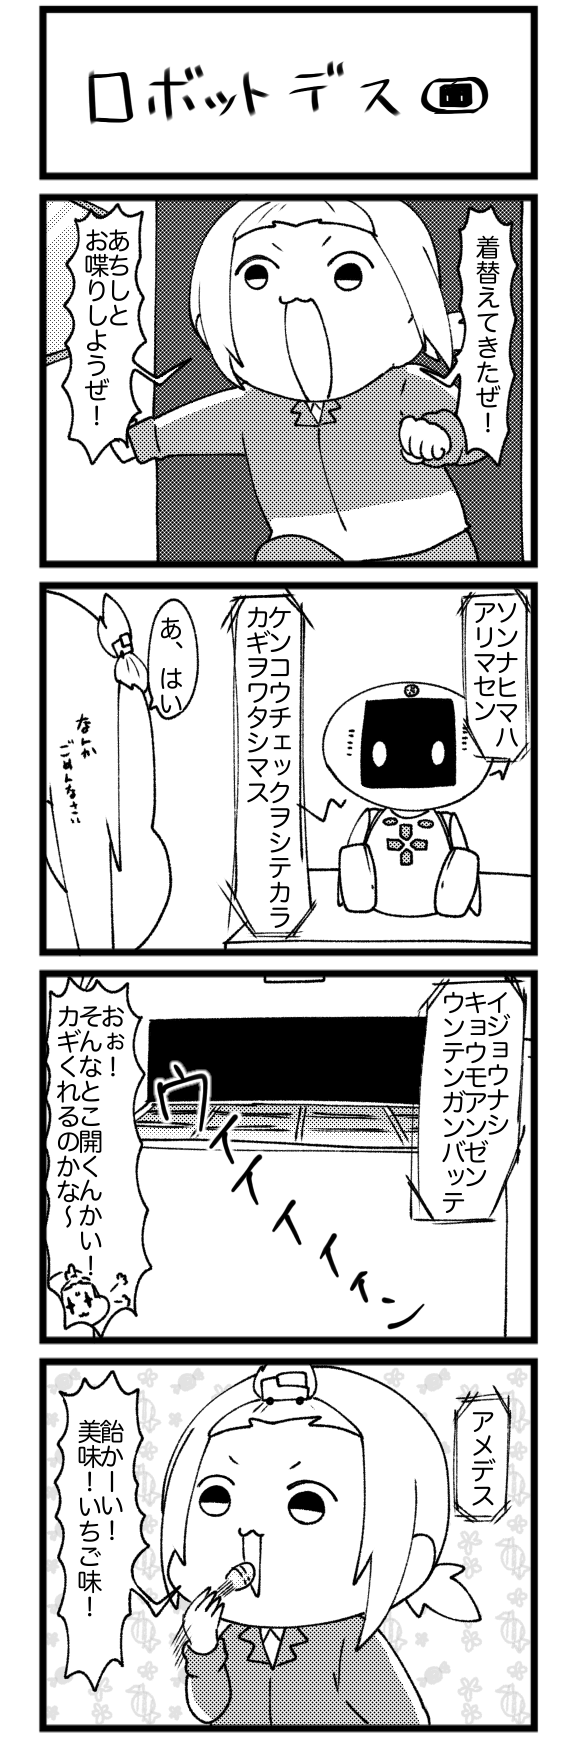 ロボットデス